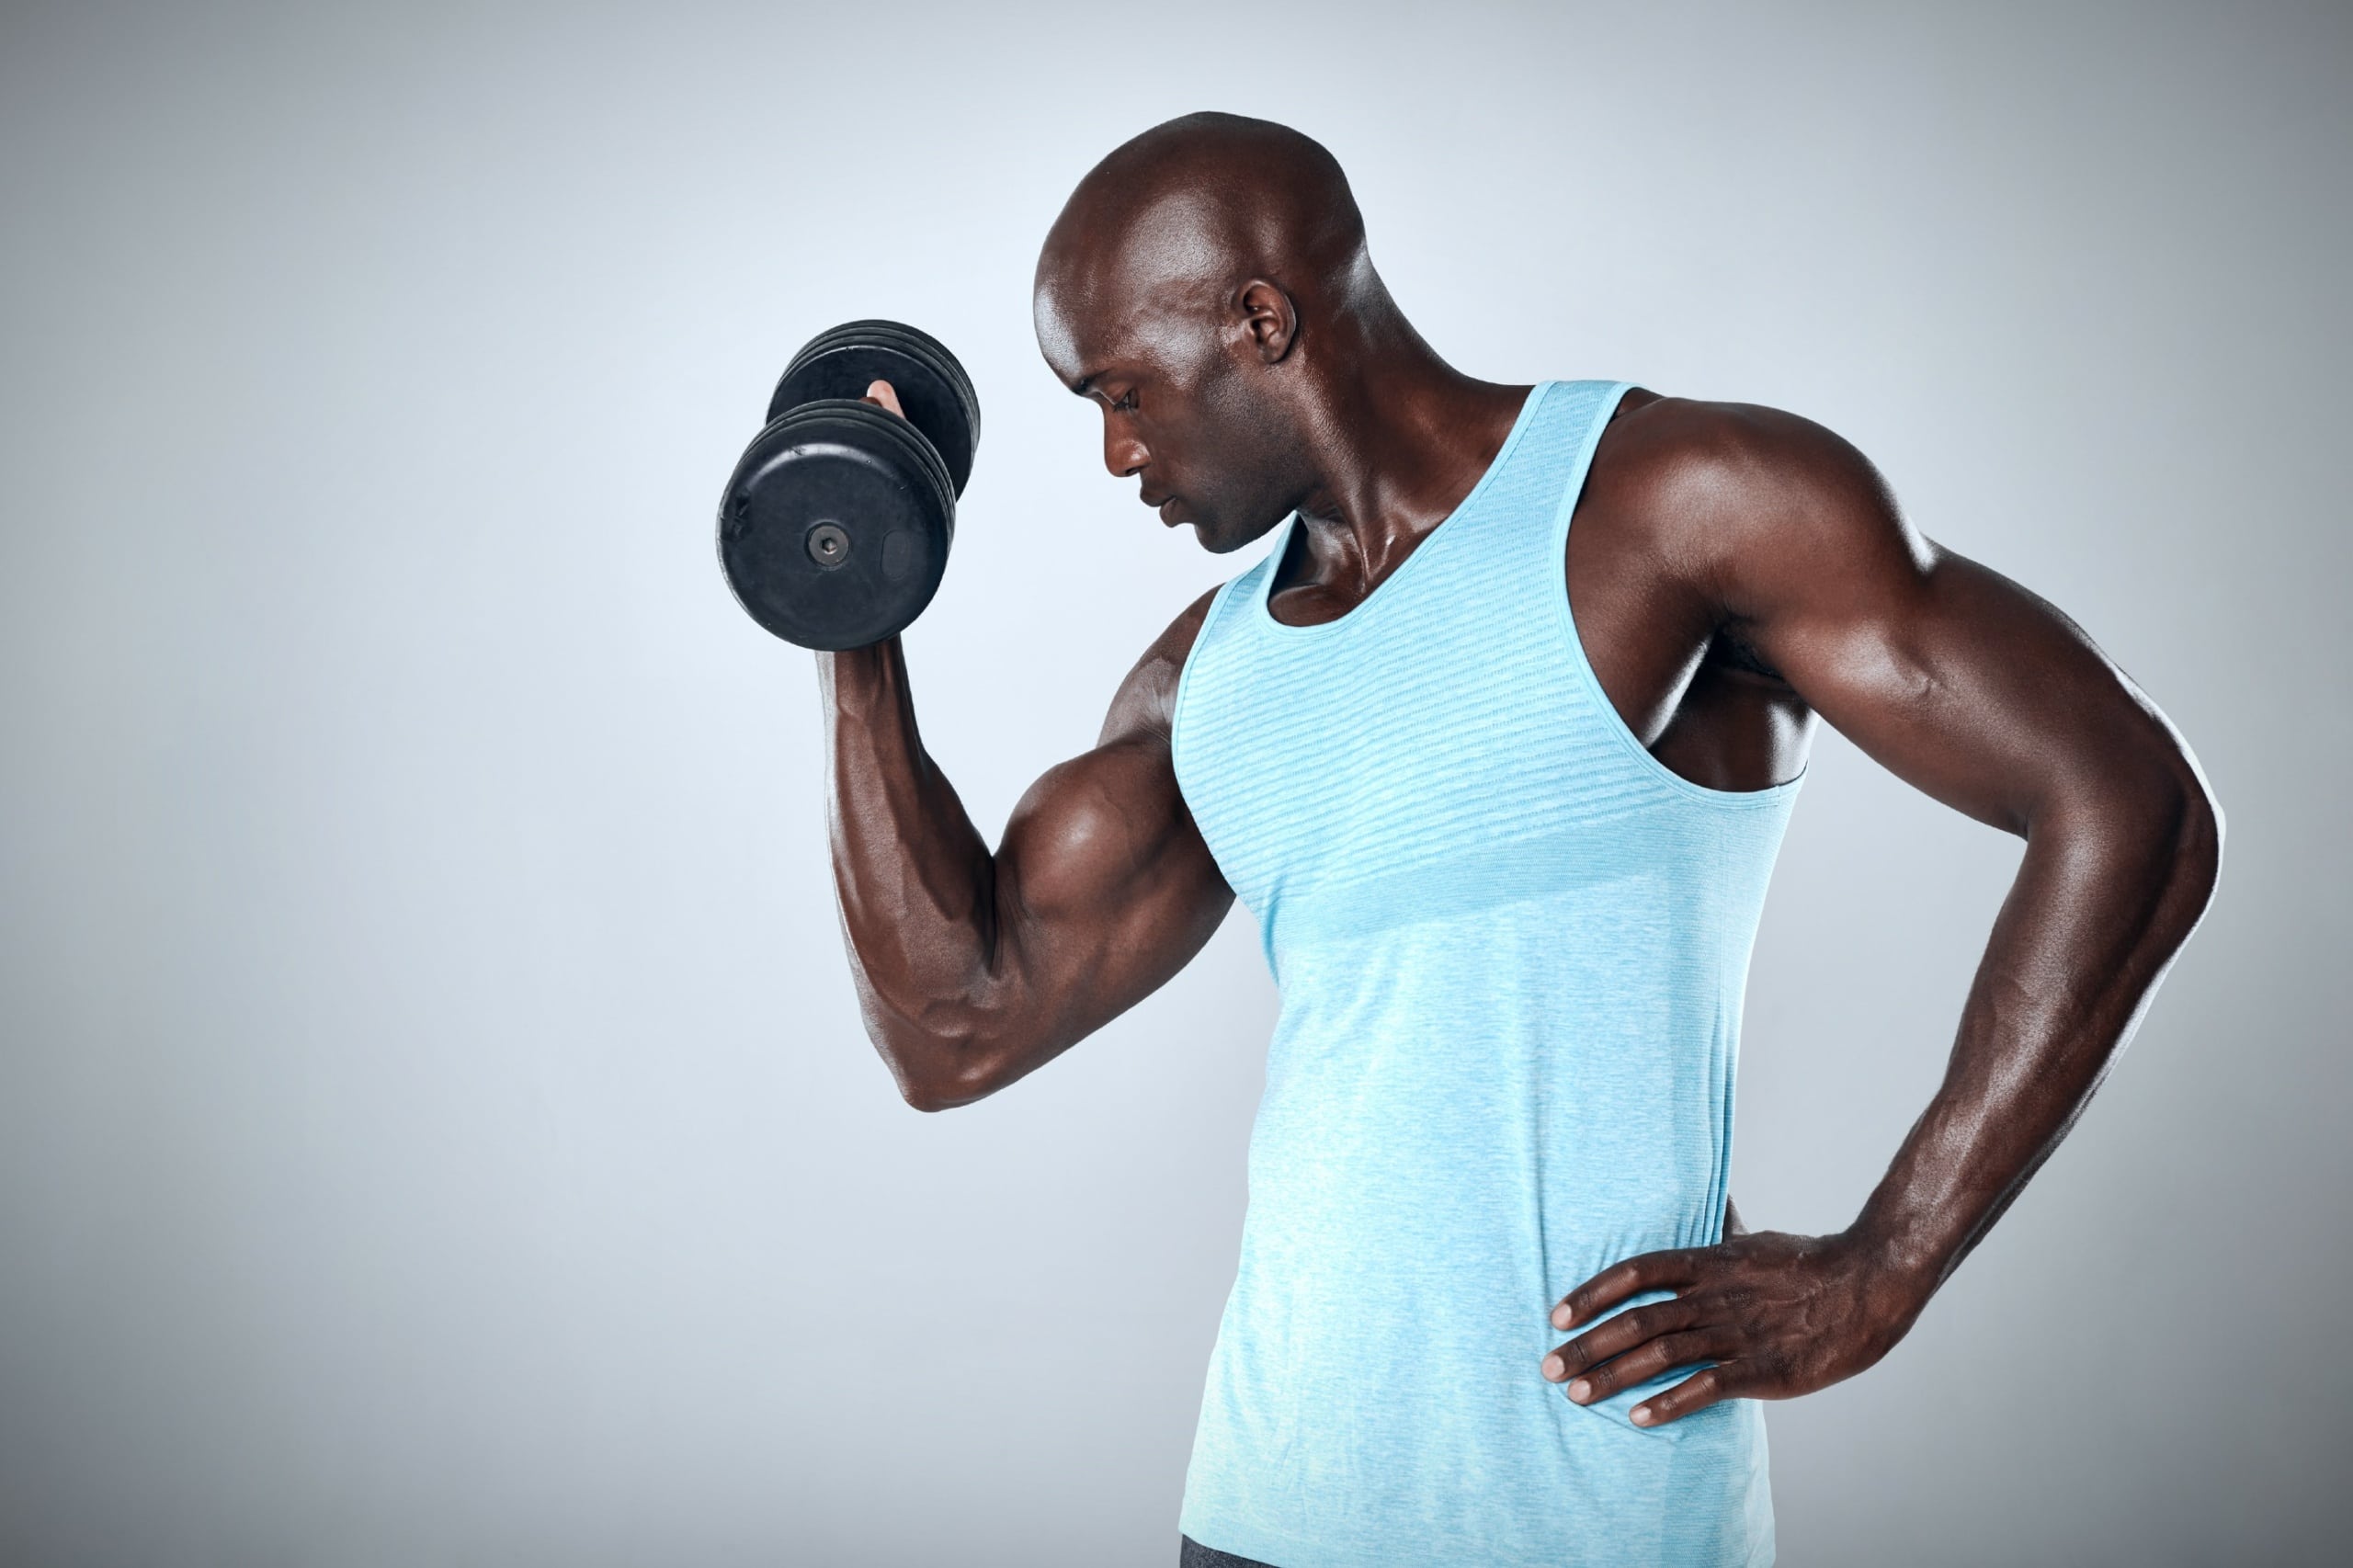 Musculation haltères : programmes et exercices avec haltères